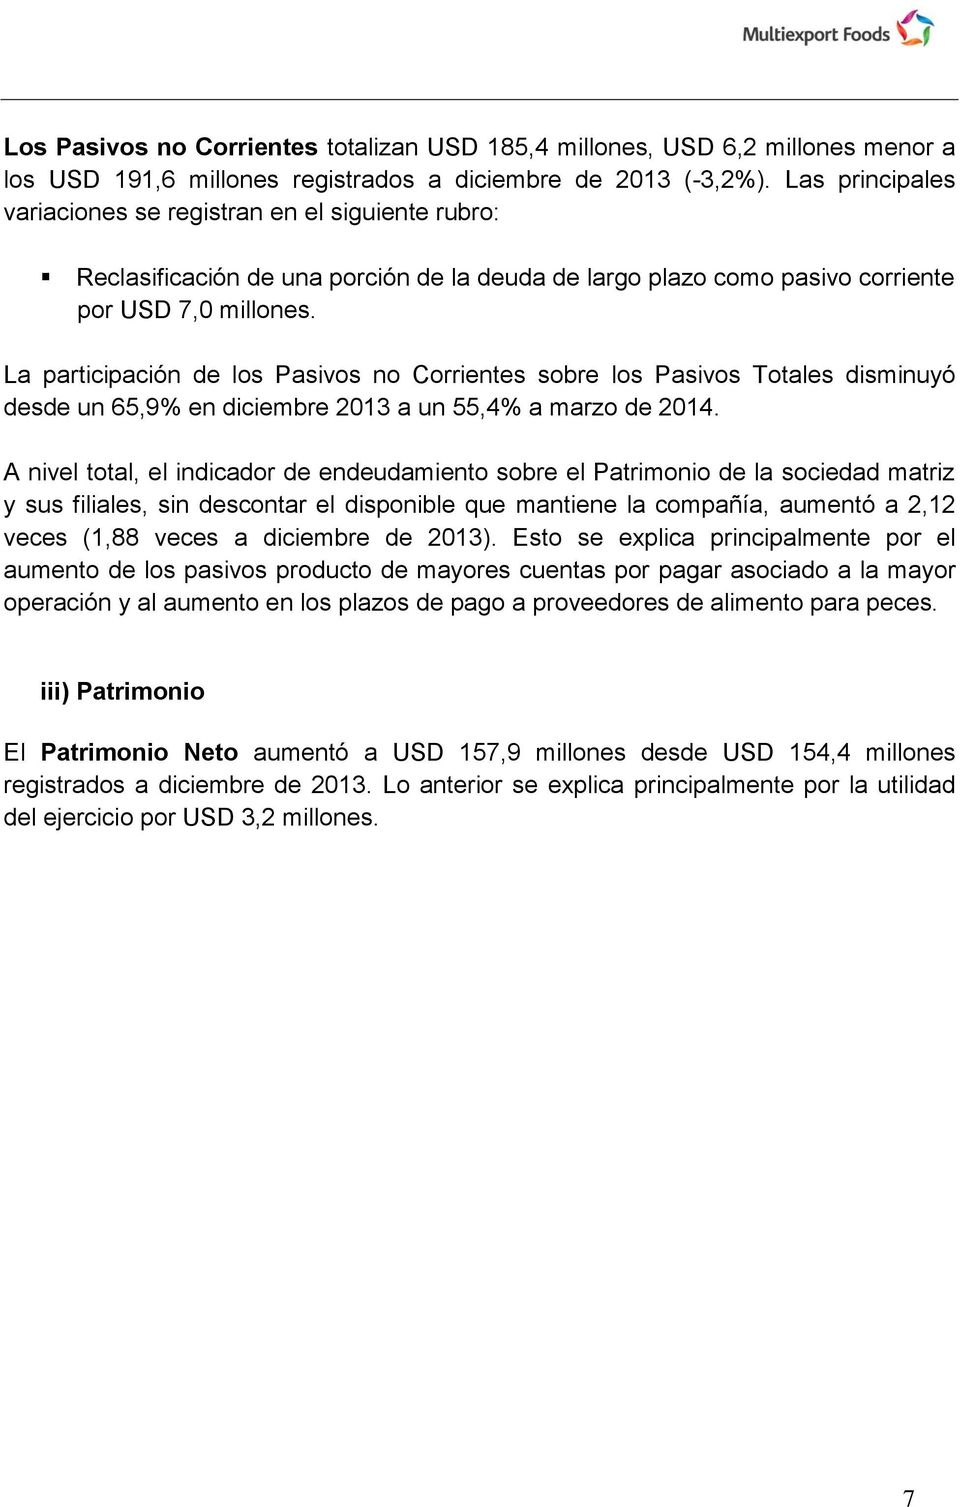 La participación de los Pasivos no Corrientes sobre los Pasivos Totales disminuyó desde un 65,9% en diciembre 2013 a un 55,4% a marzo de 2014.